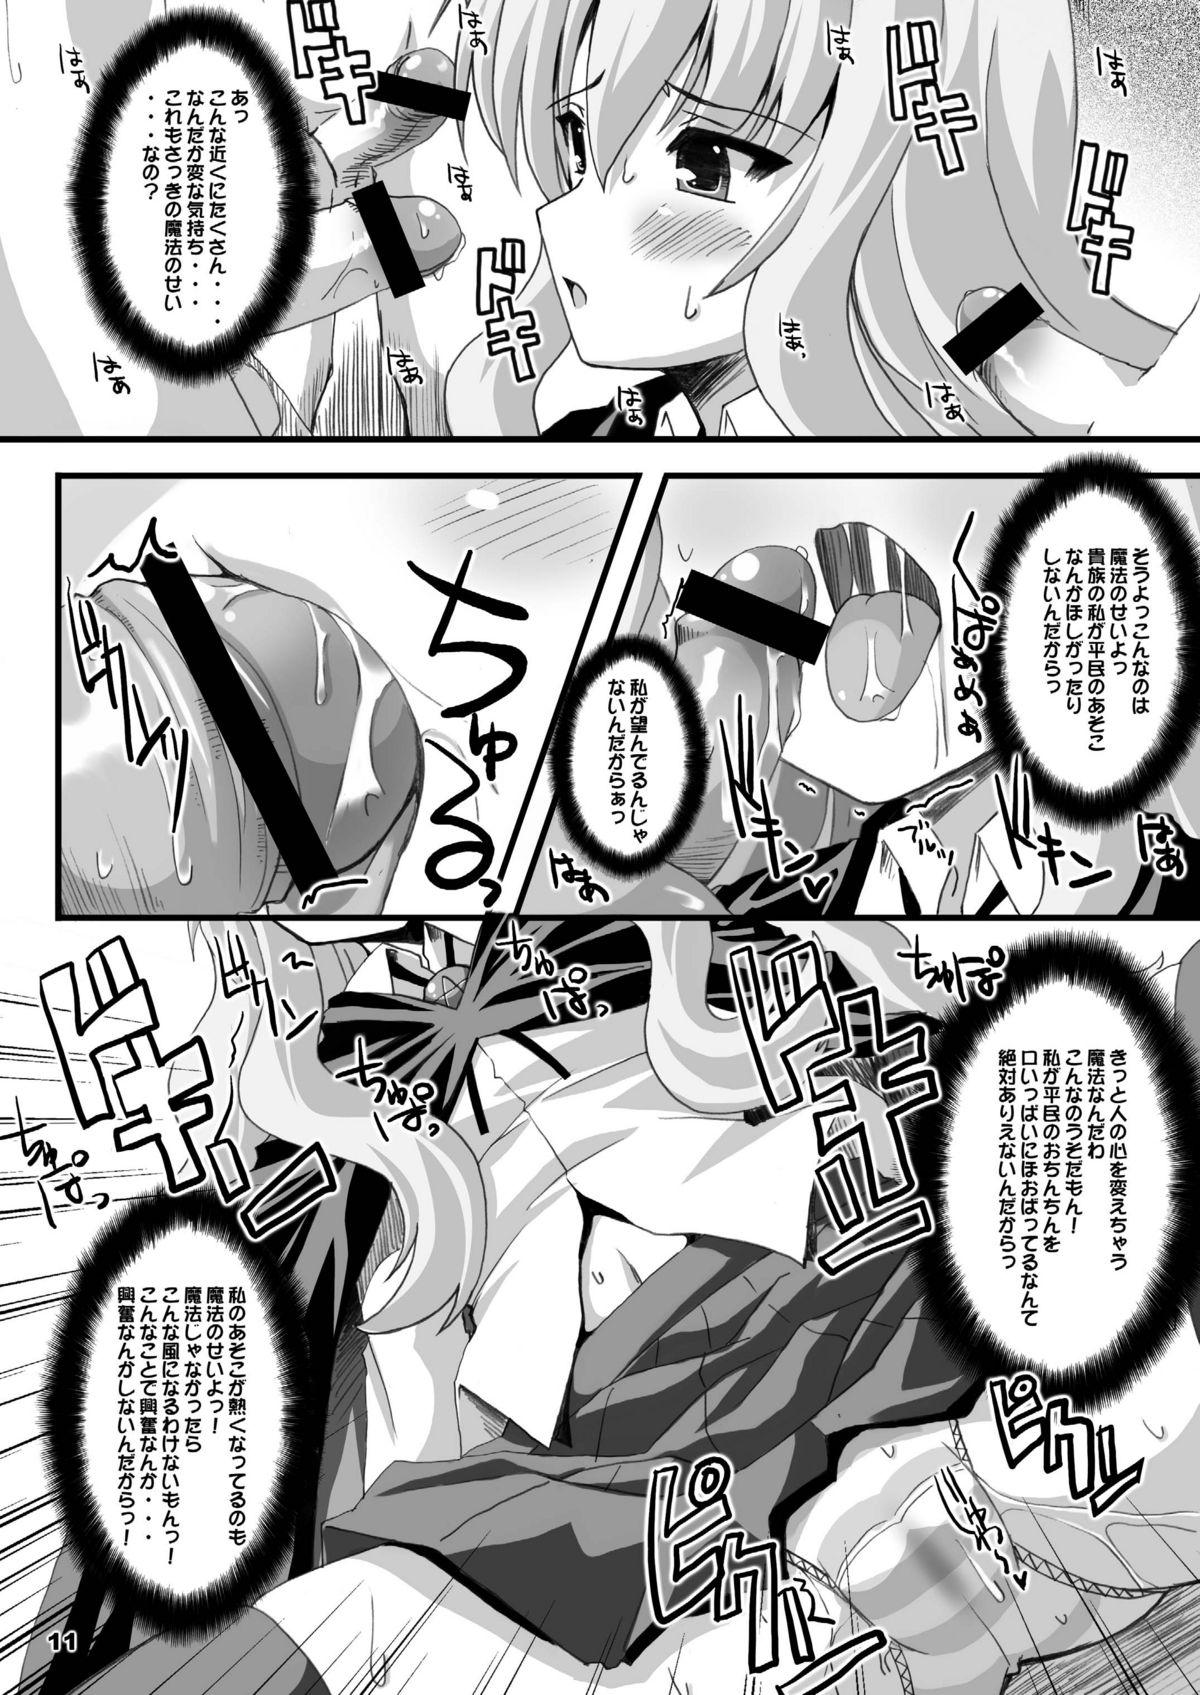 Doctor Zero Kyori Shageki - Zero no tsukaima Putita - Page 11